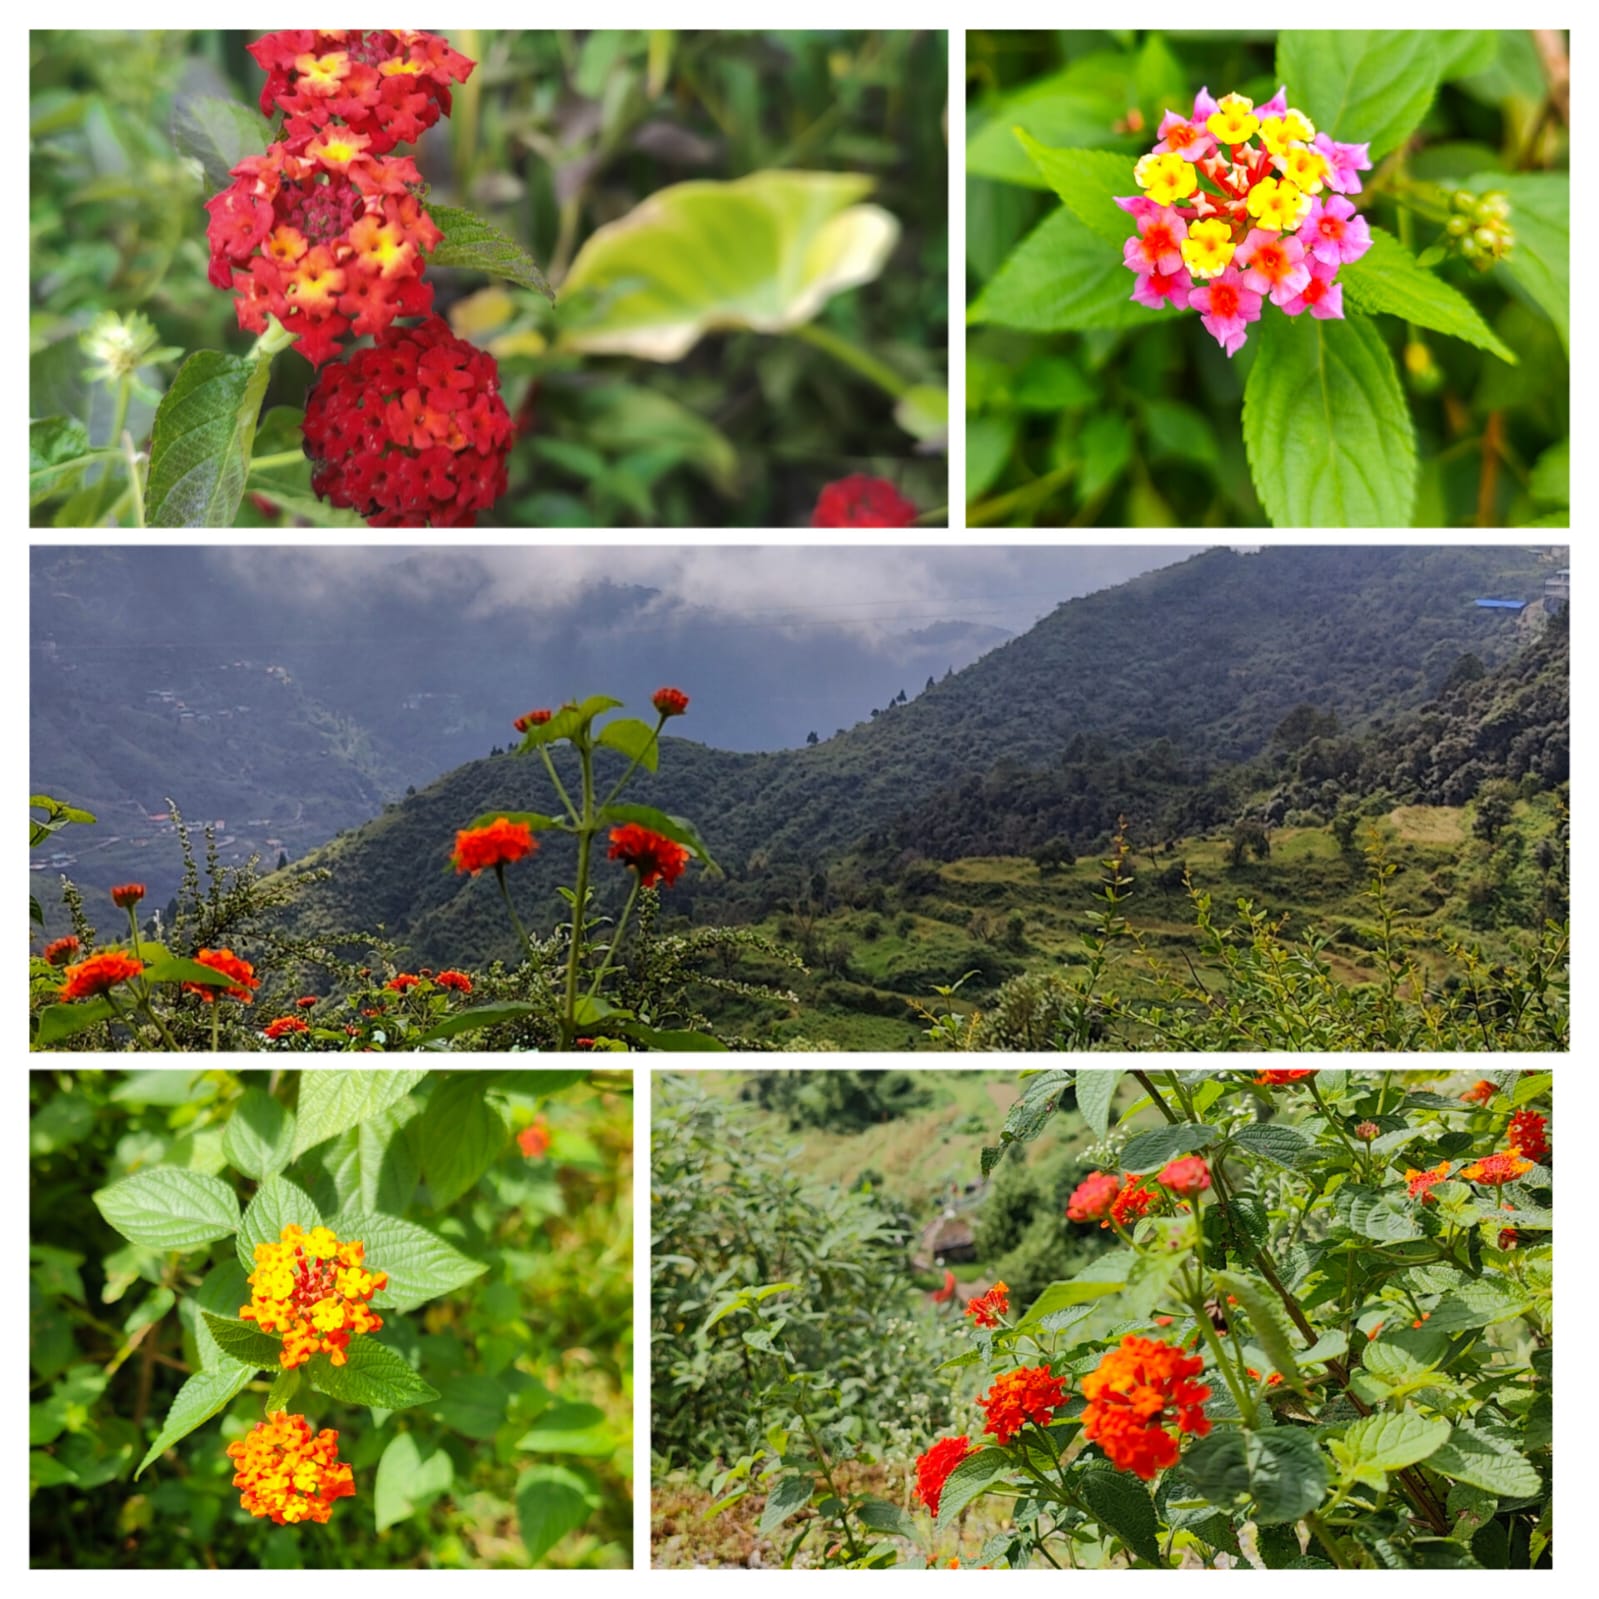 Two varieties of Lantana flowers in Landour, Mussoorie